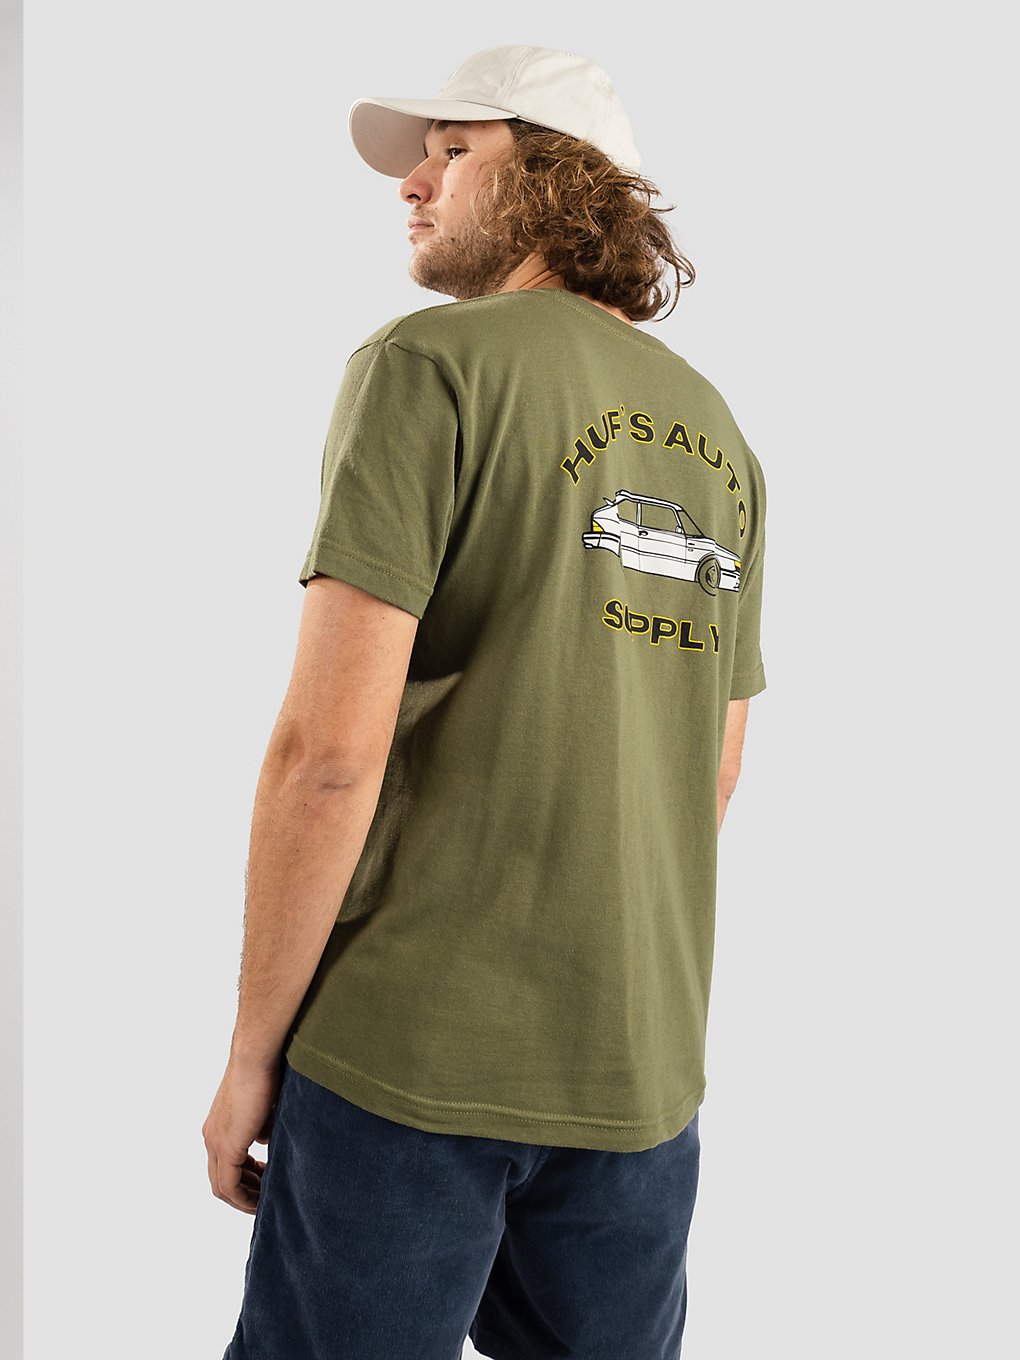 HUF Chop Shop Pocket T-Shirt olive kaufen